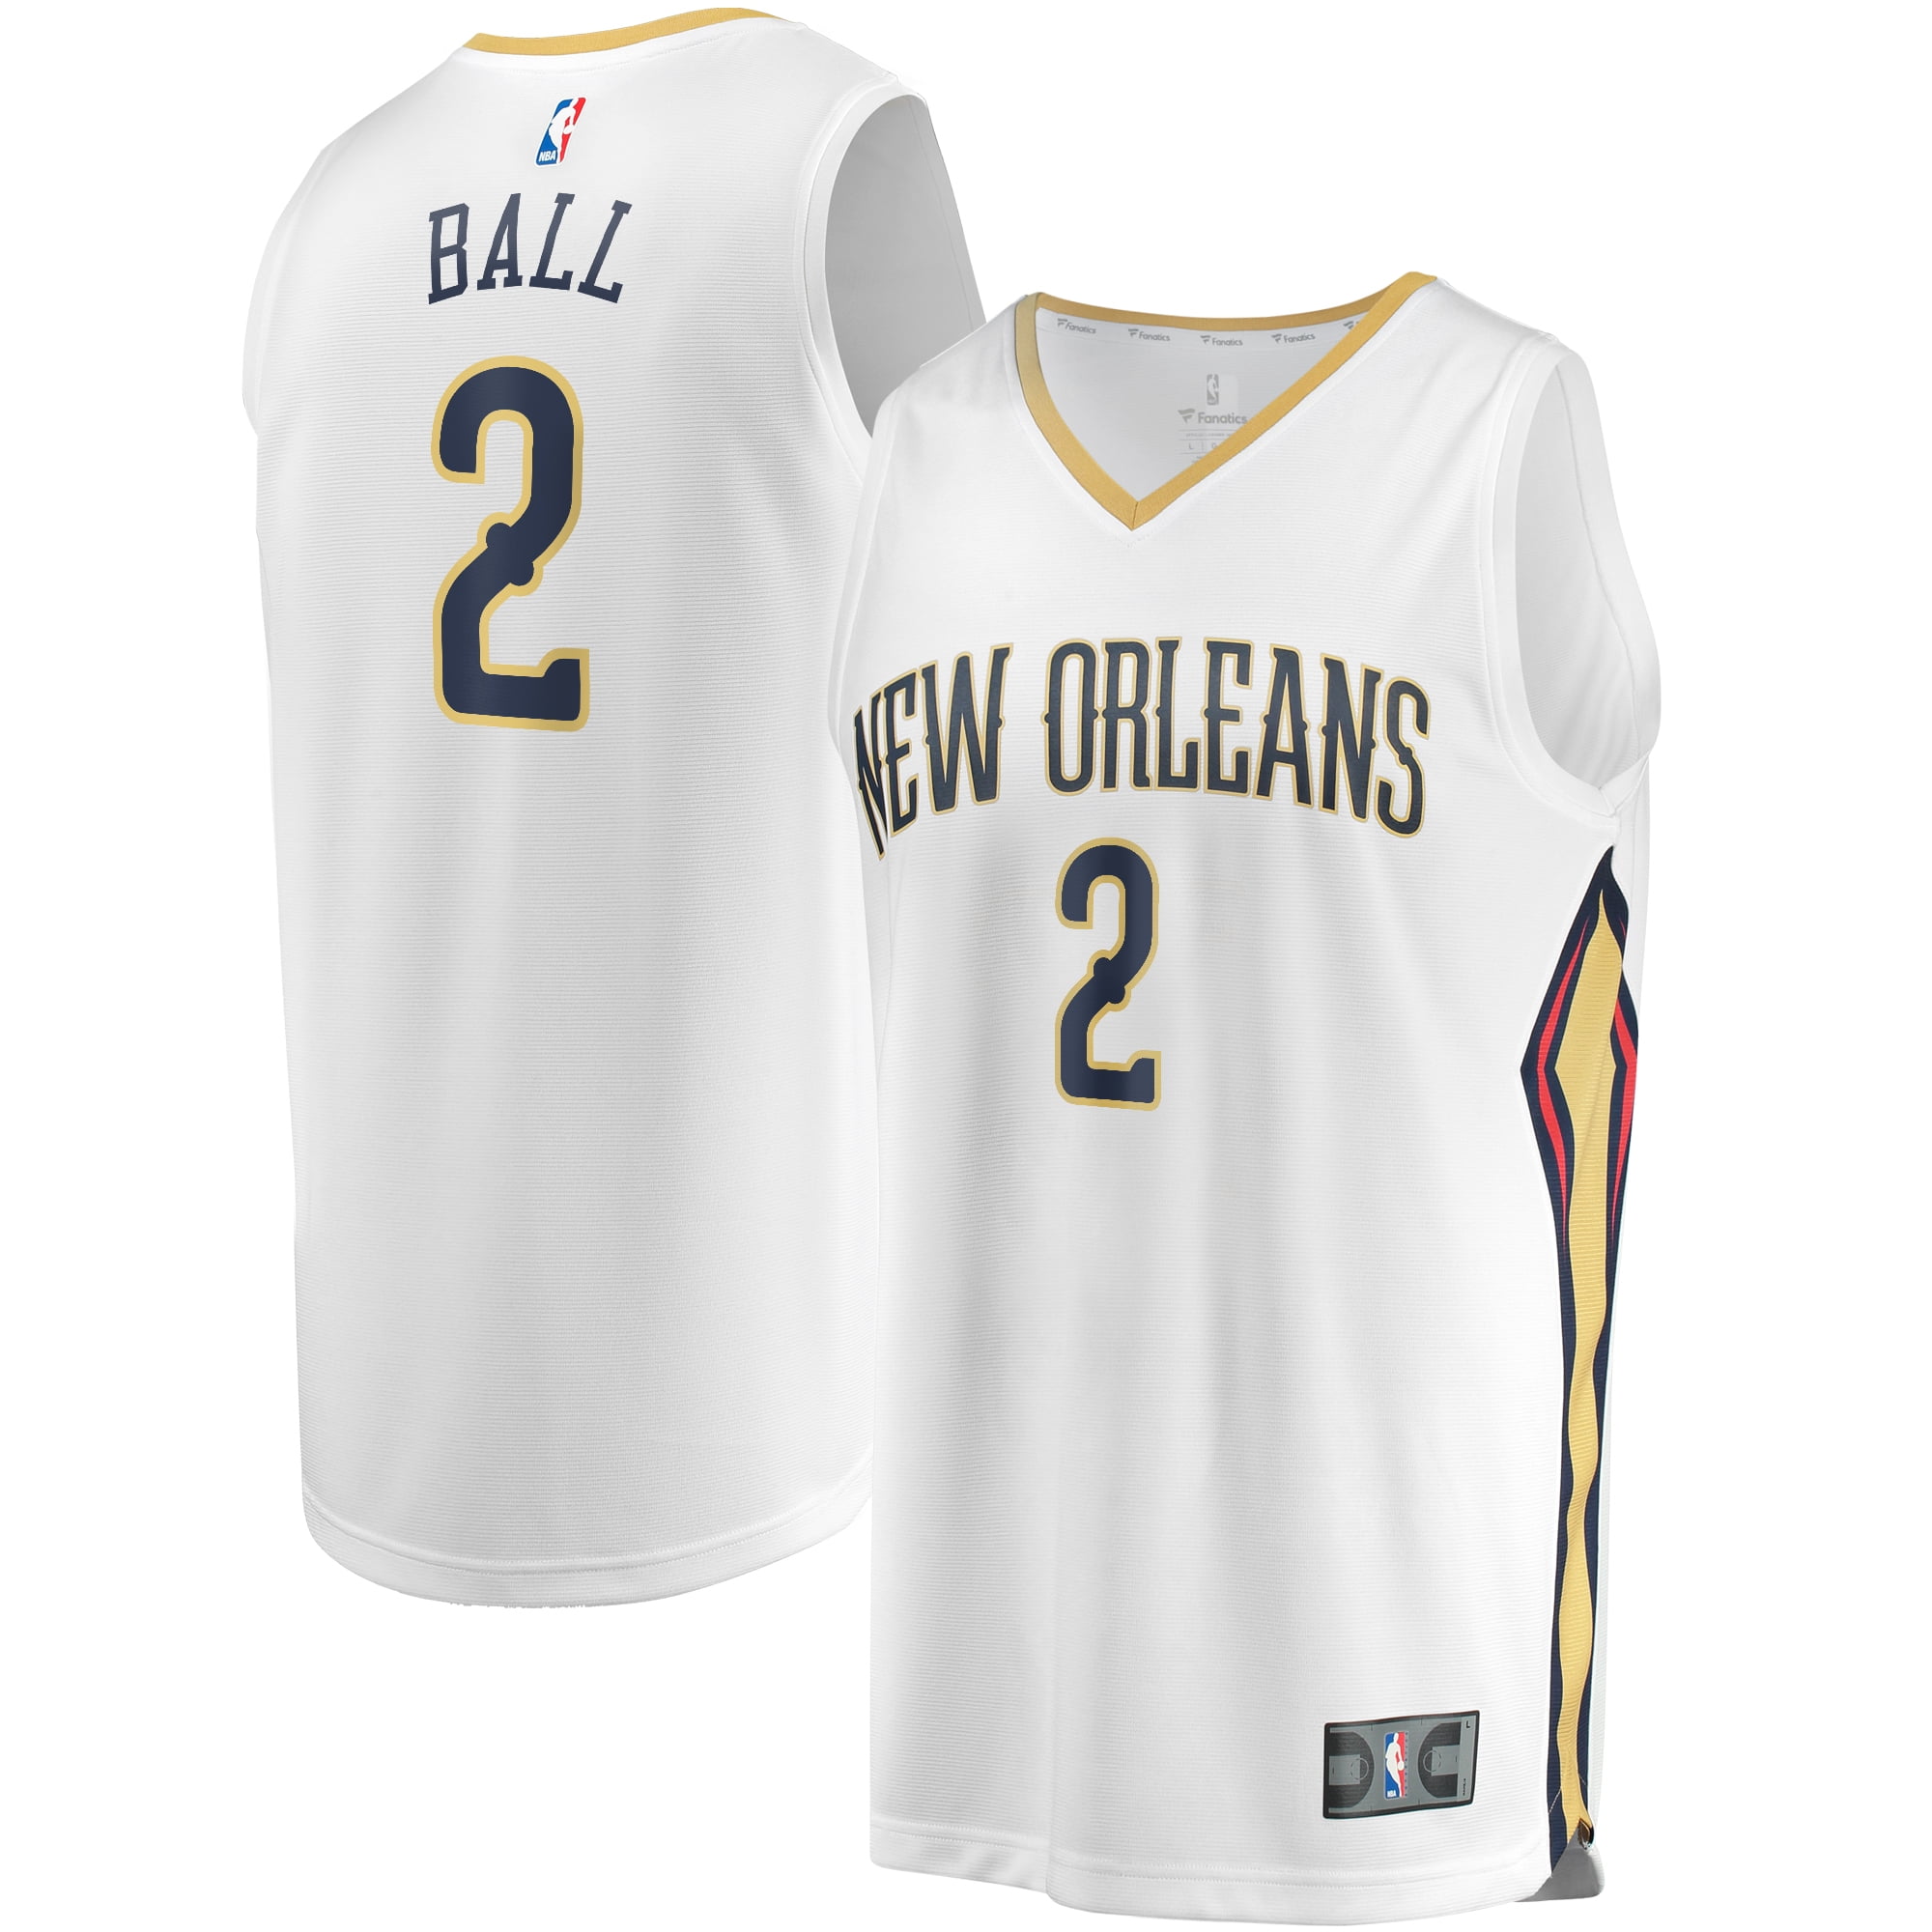 î€€Lonzoî€ î€€Ballî€ New Orleans Pelicans Fanatics Branded Fast Break Replica ...